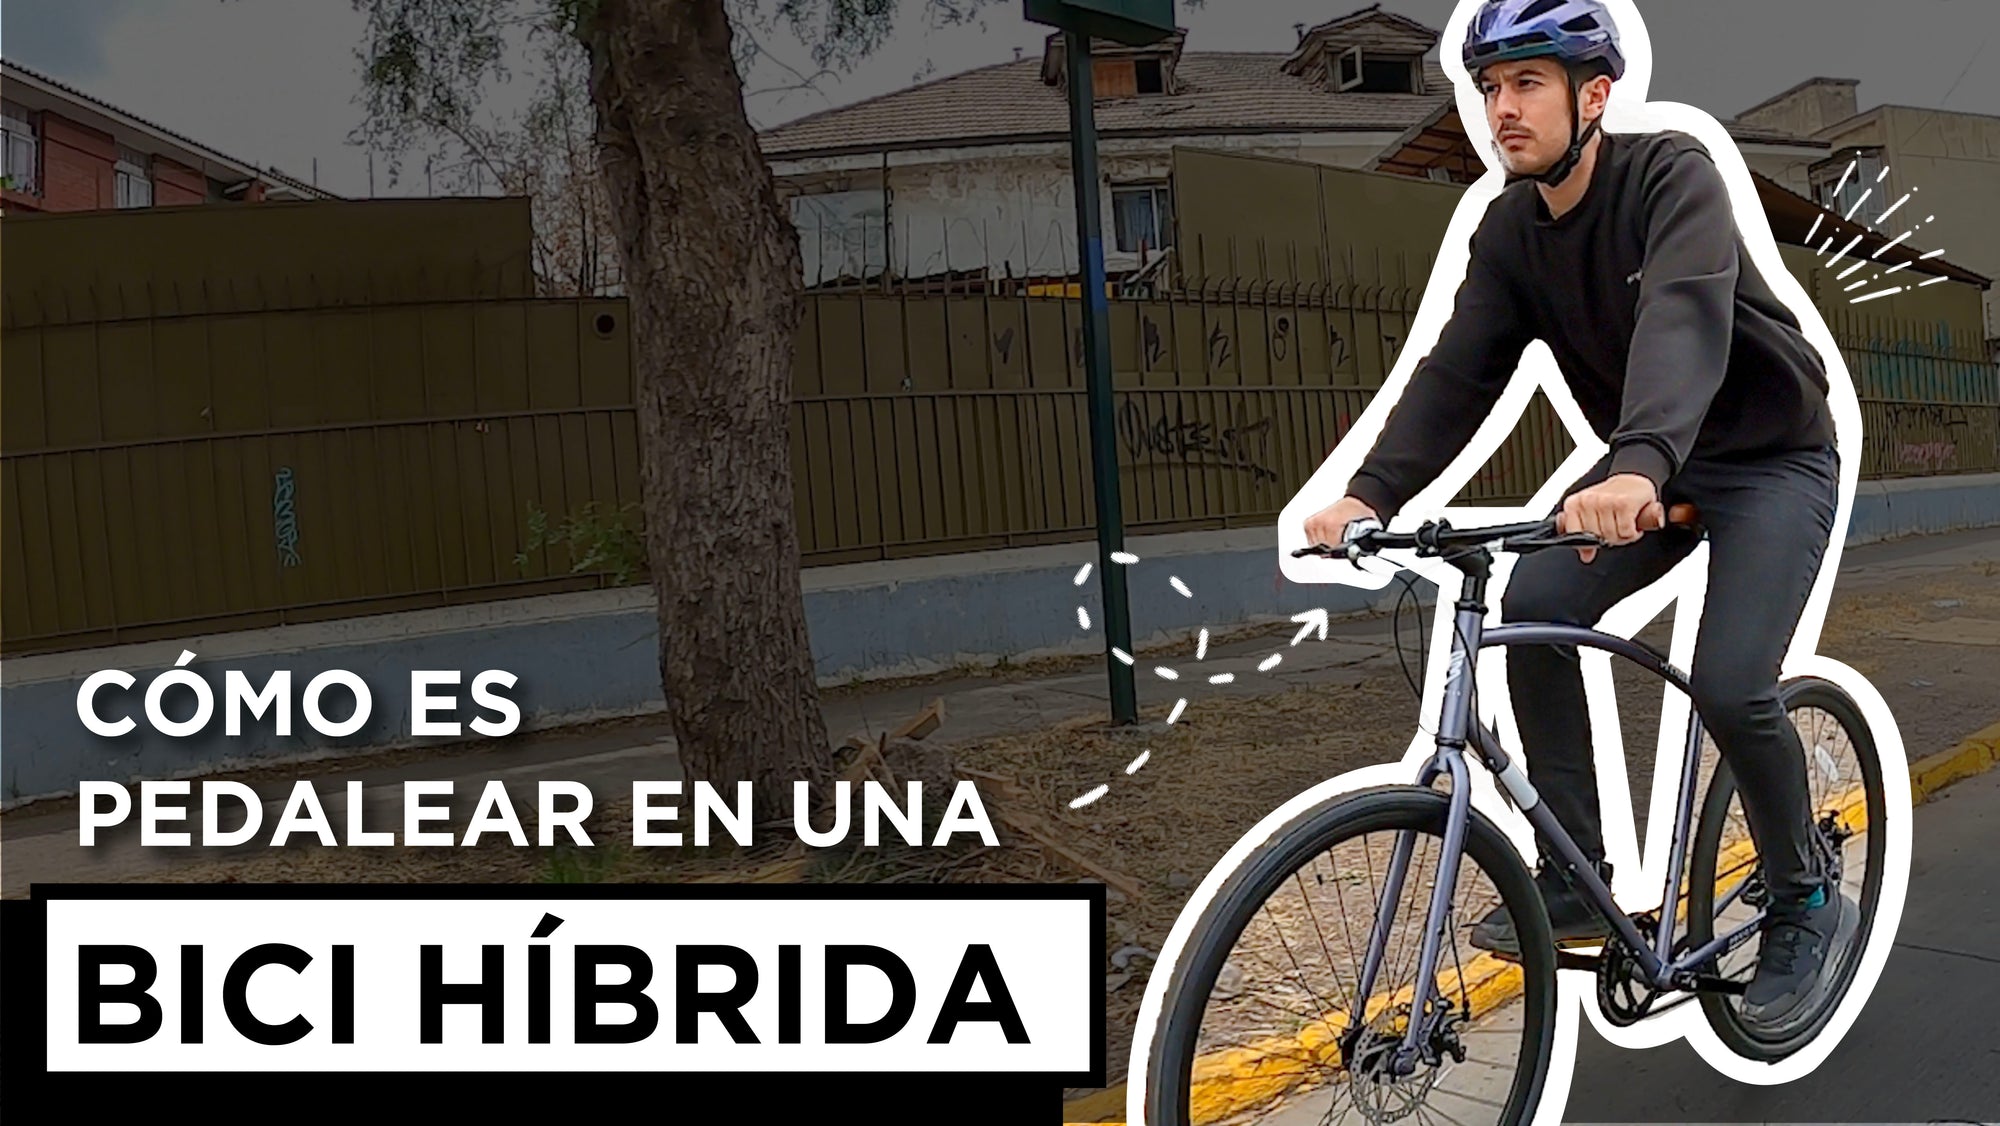 [Video] Probamos nuestra bicicleta Híbrida en las calles de Santiago